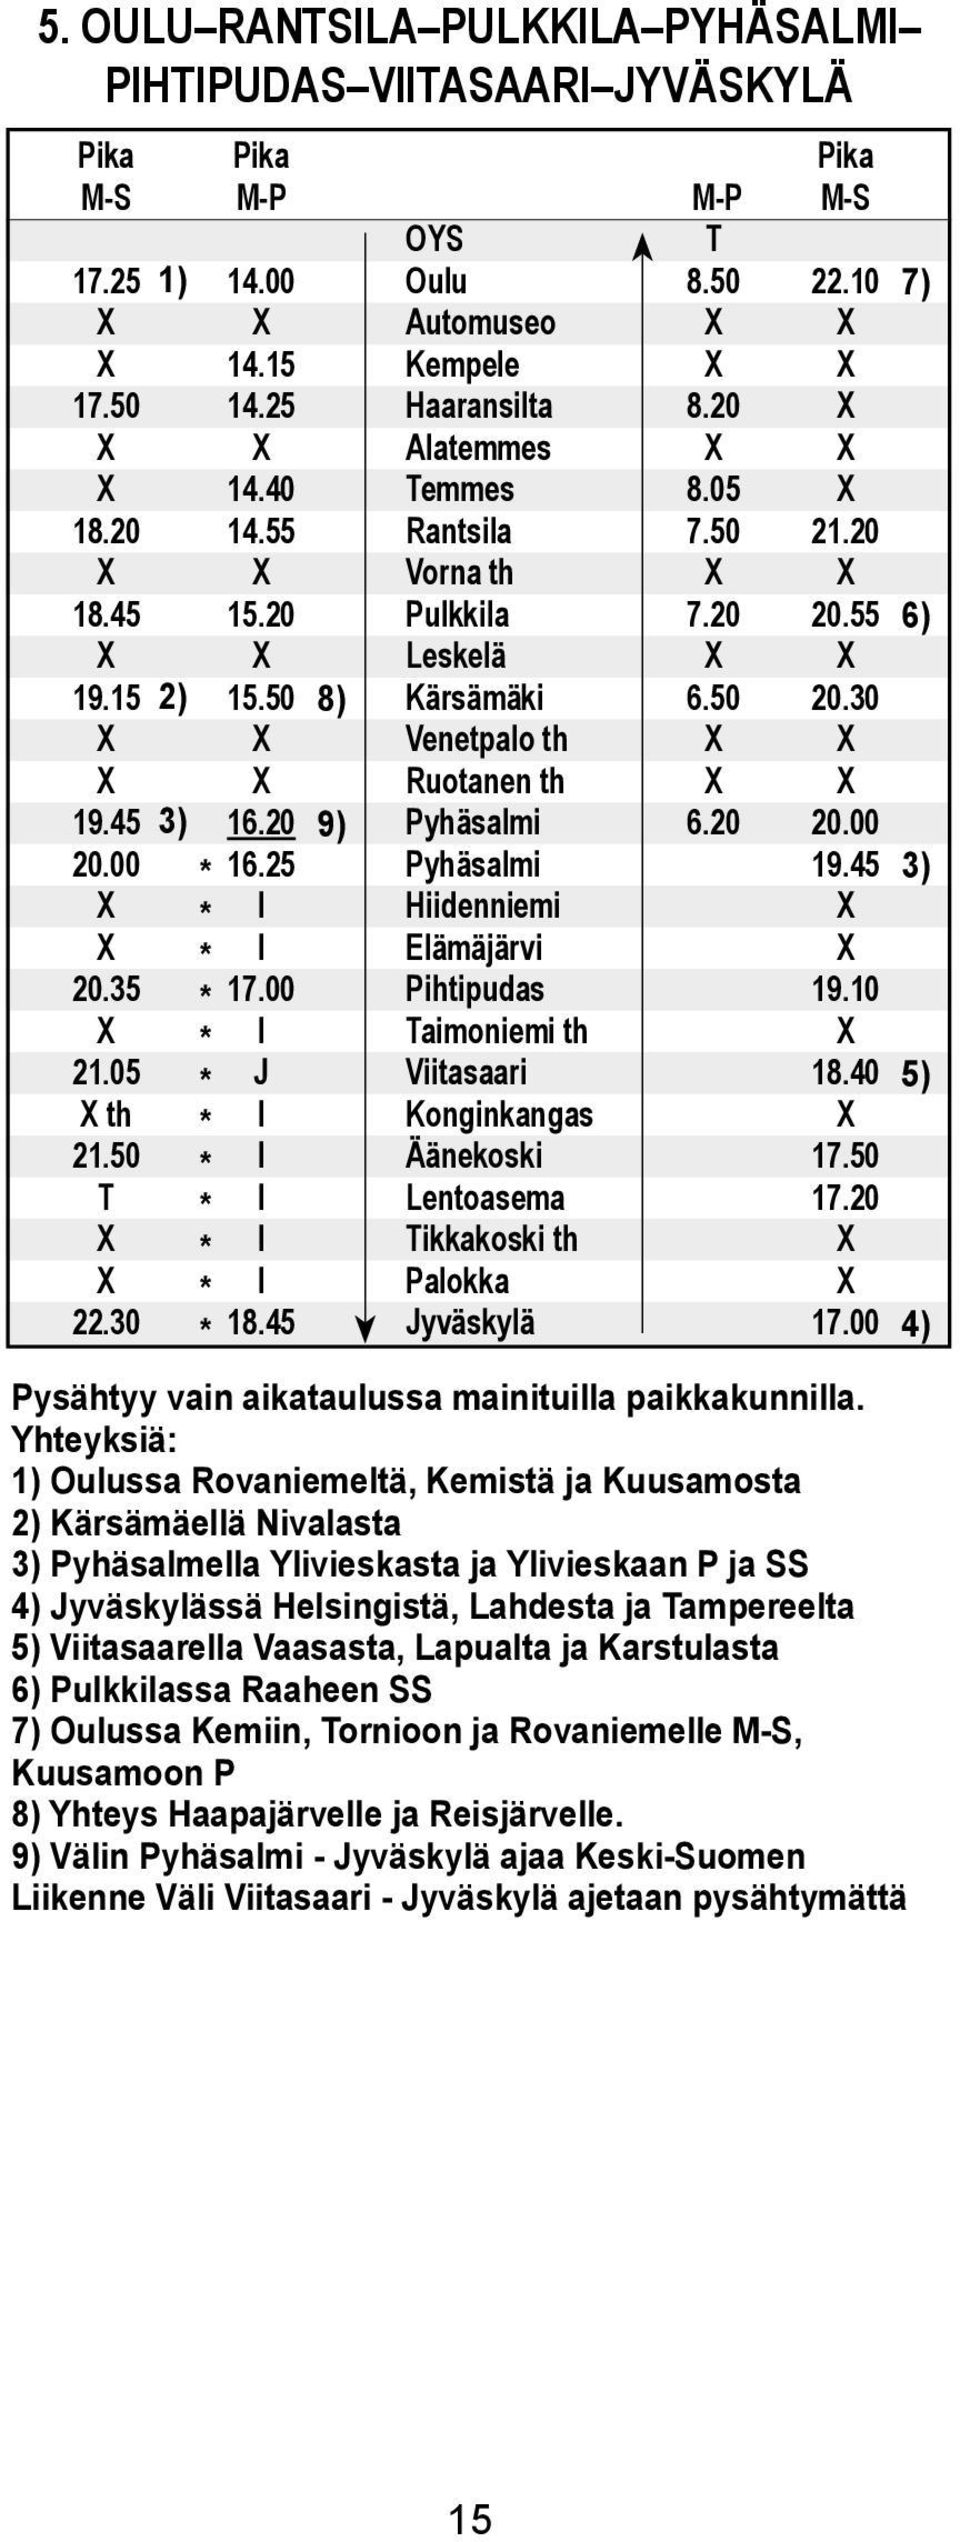 Konginkangas Äänekoski Lentoasema ikkakoski th Paokka Jyväskyä 8.20 8.05 7.50 7.20 6.50 6.20 22.10 21.20 20.55 20.30 20.00 19.45 19.10 18.40 17.50 17.20 17.